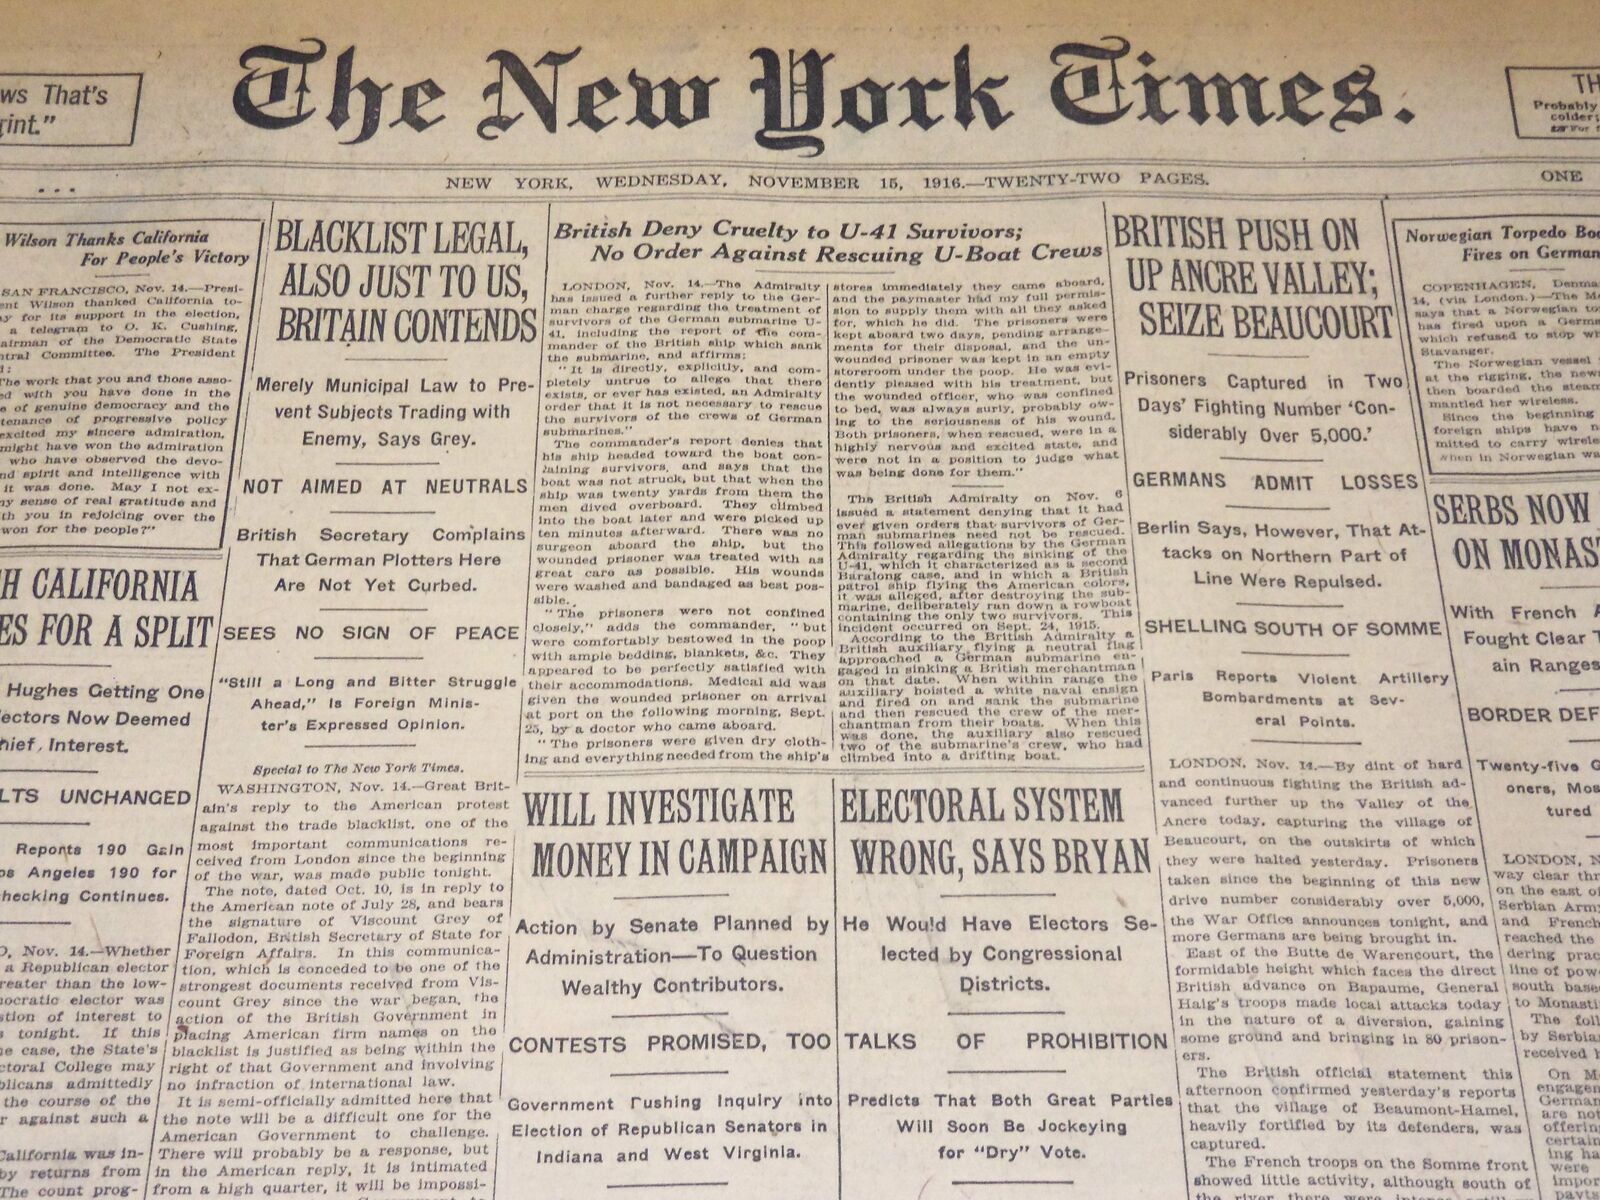 1916 NOVEMBER 15 NEW YORK TIMES - ELECTORAL SYSTEM WRONG SAY BRYAN - NT 7730